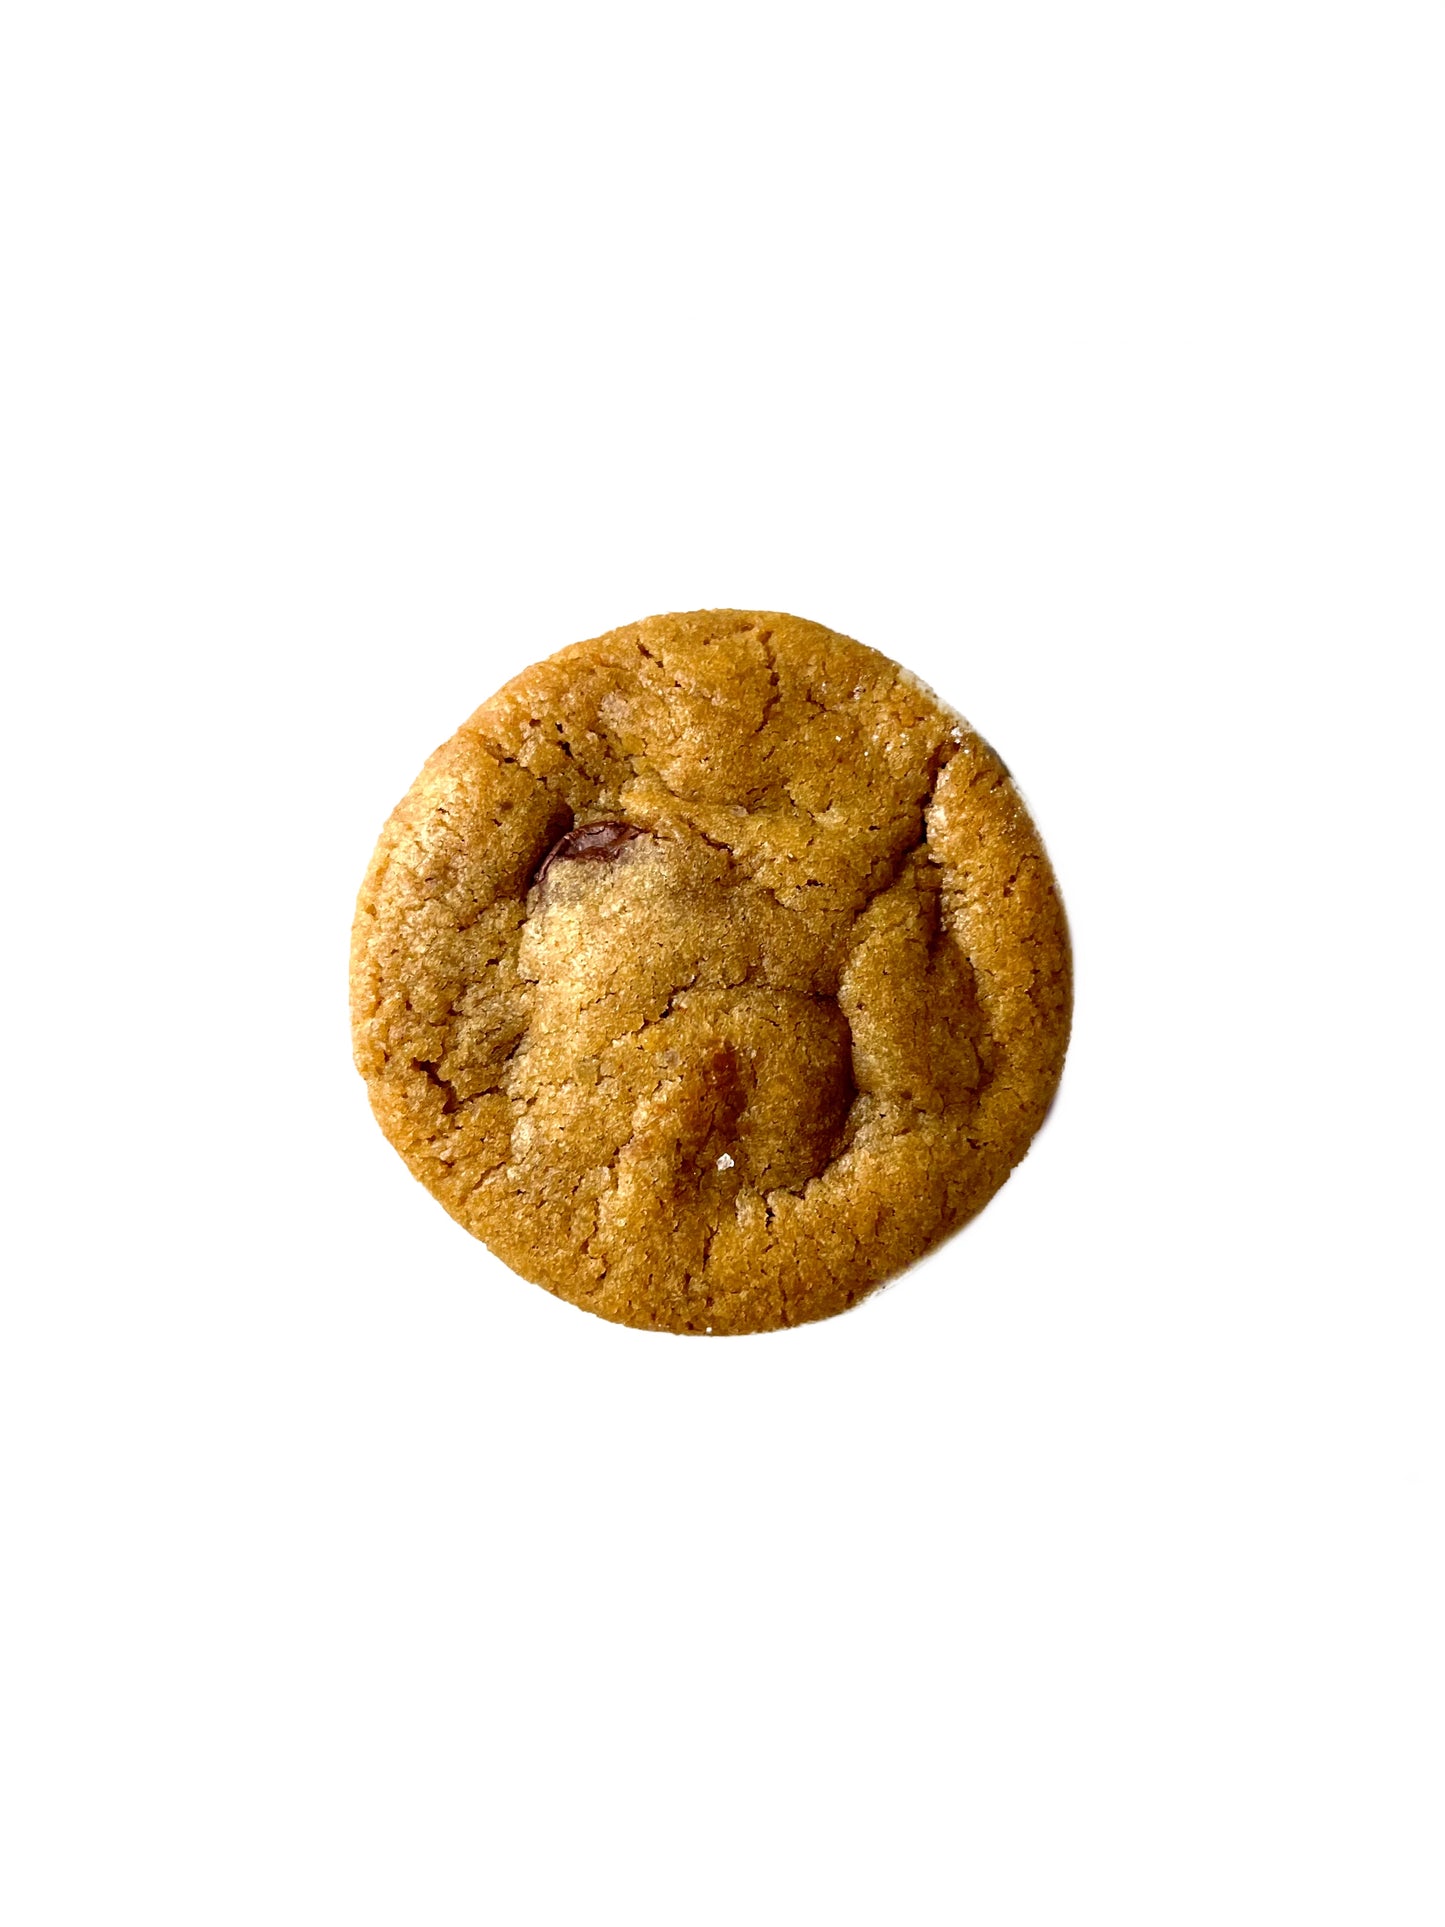 Nutella Cookies